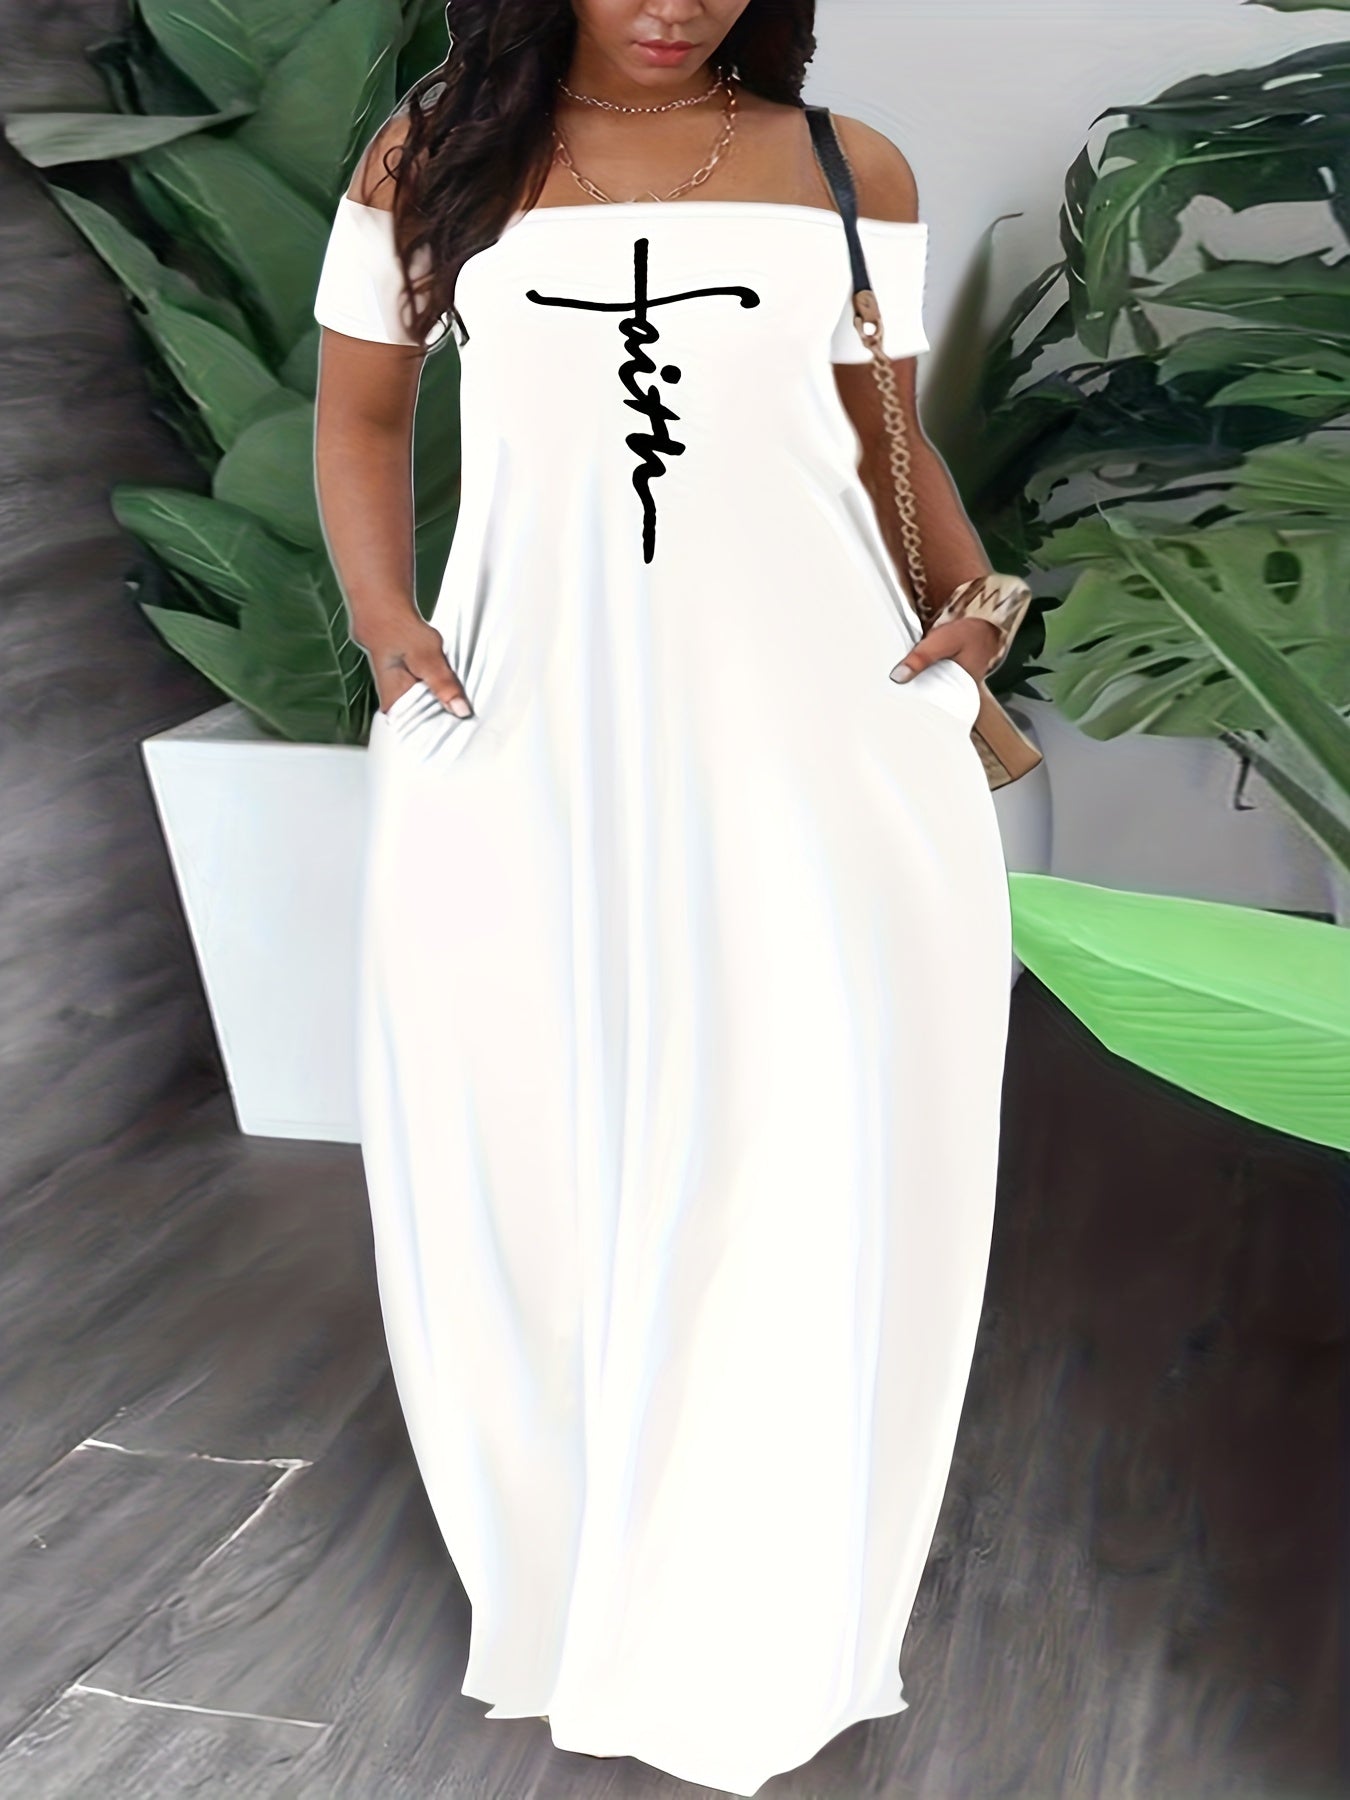 Faith (maxi) Plus Size Women's Christian Casual Dress claimedbygoddesigns